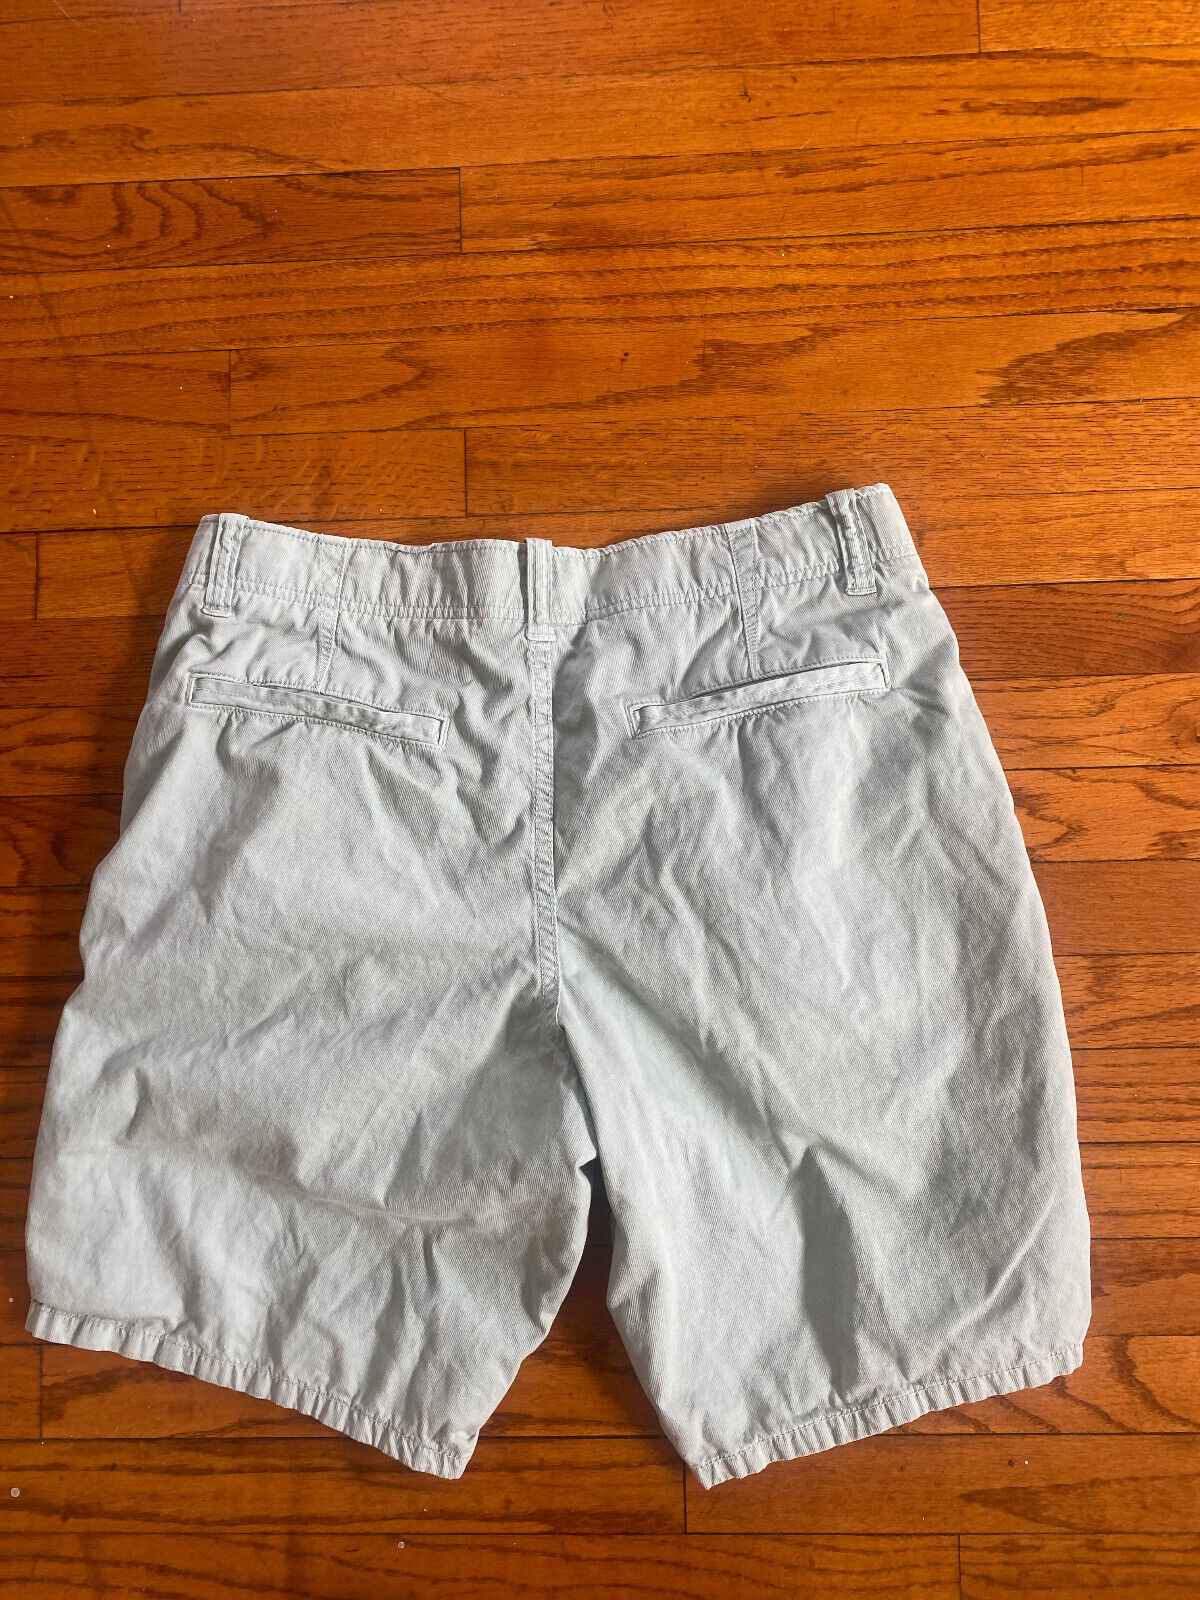 Sea Foam Green Burmuda Shorts - Gap - Size 32 Waist